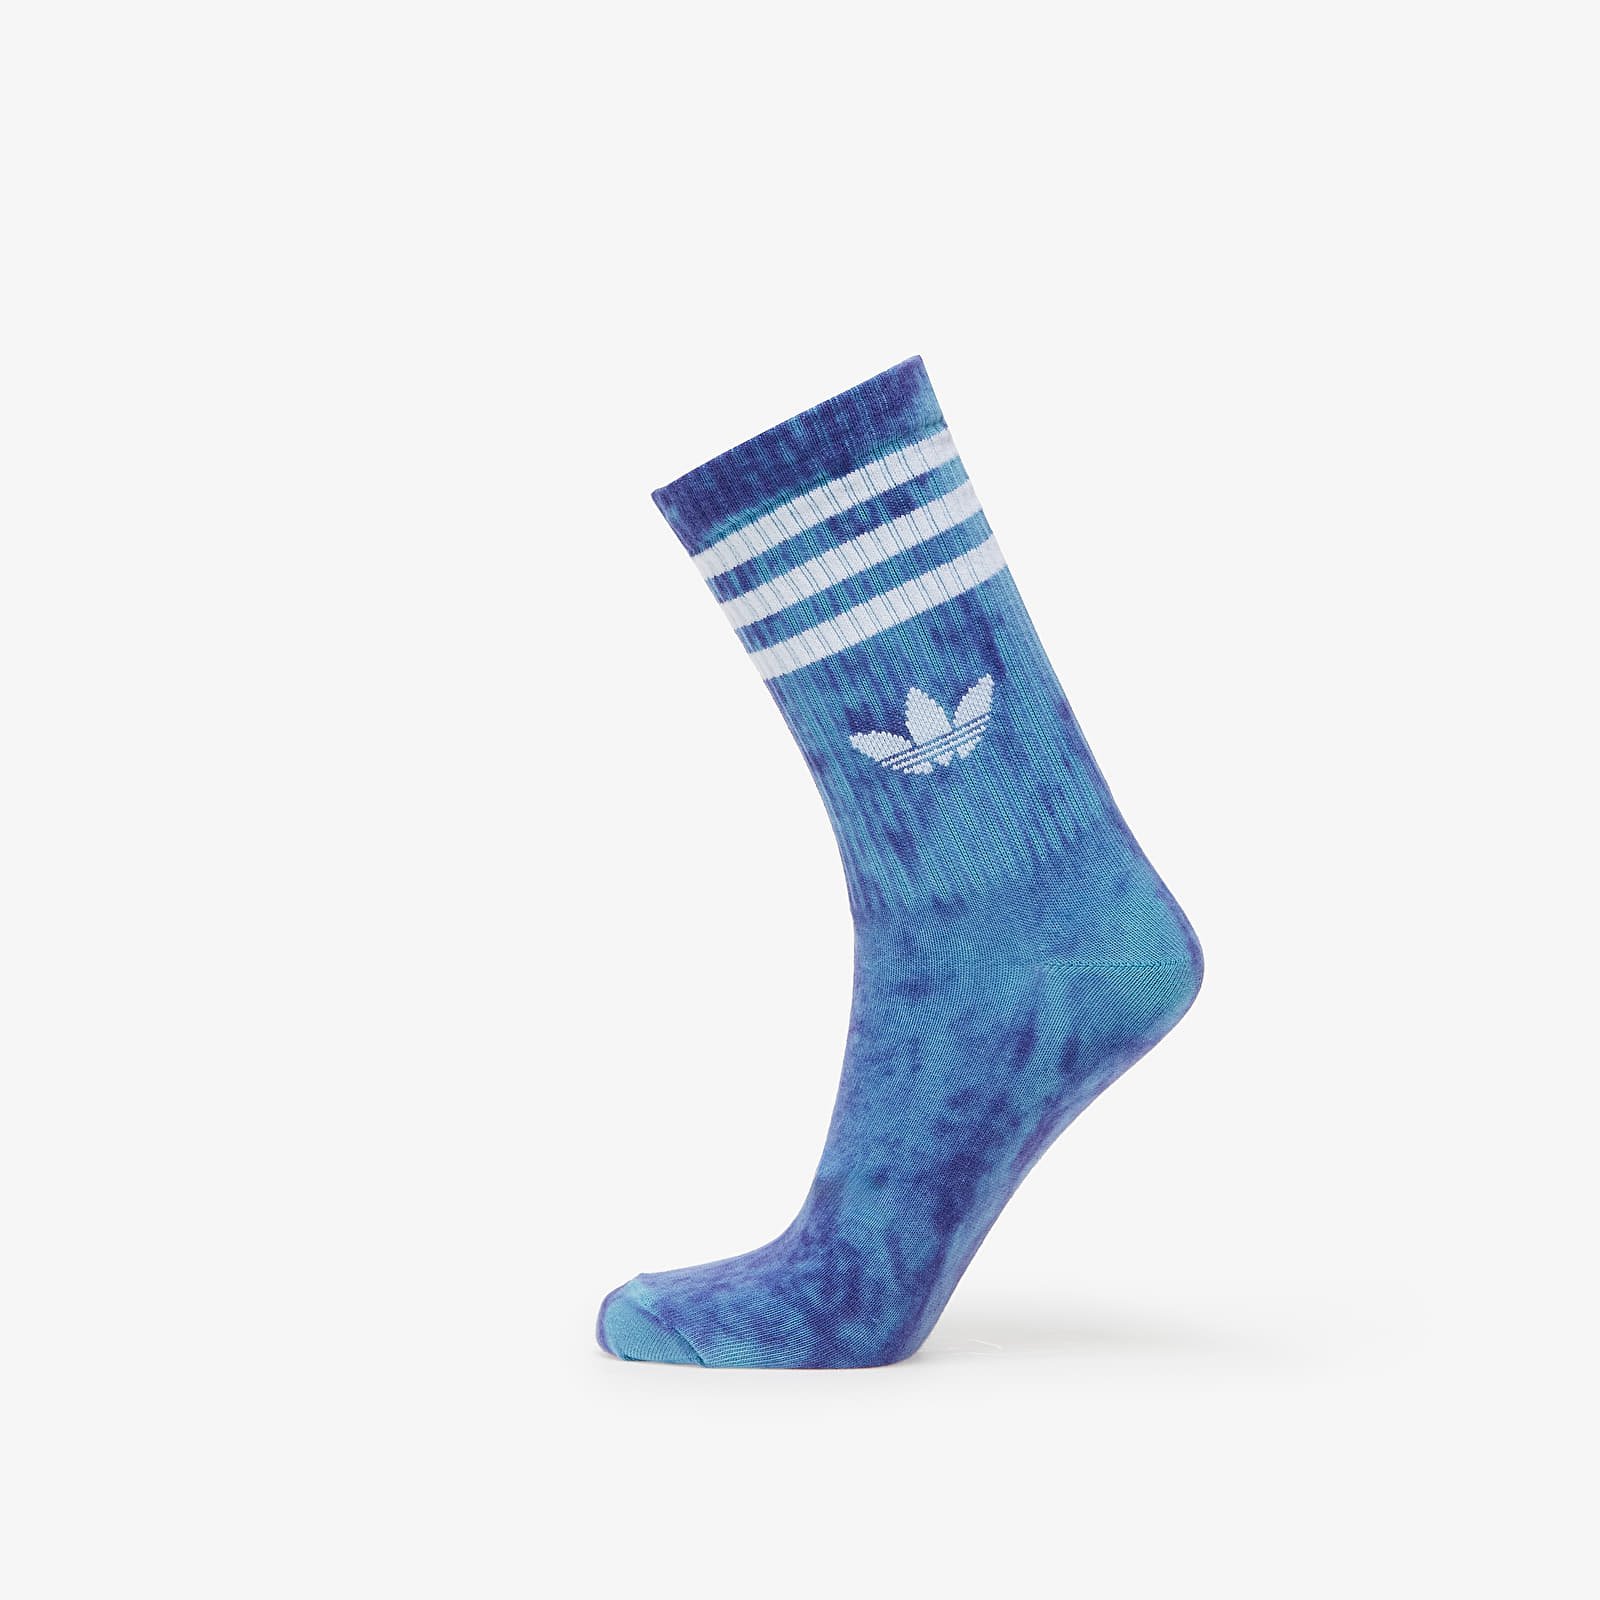 Tie Dye Socks – 2 pairs